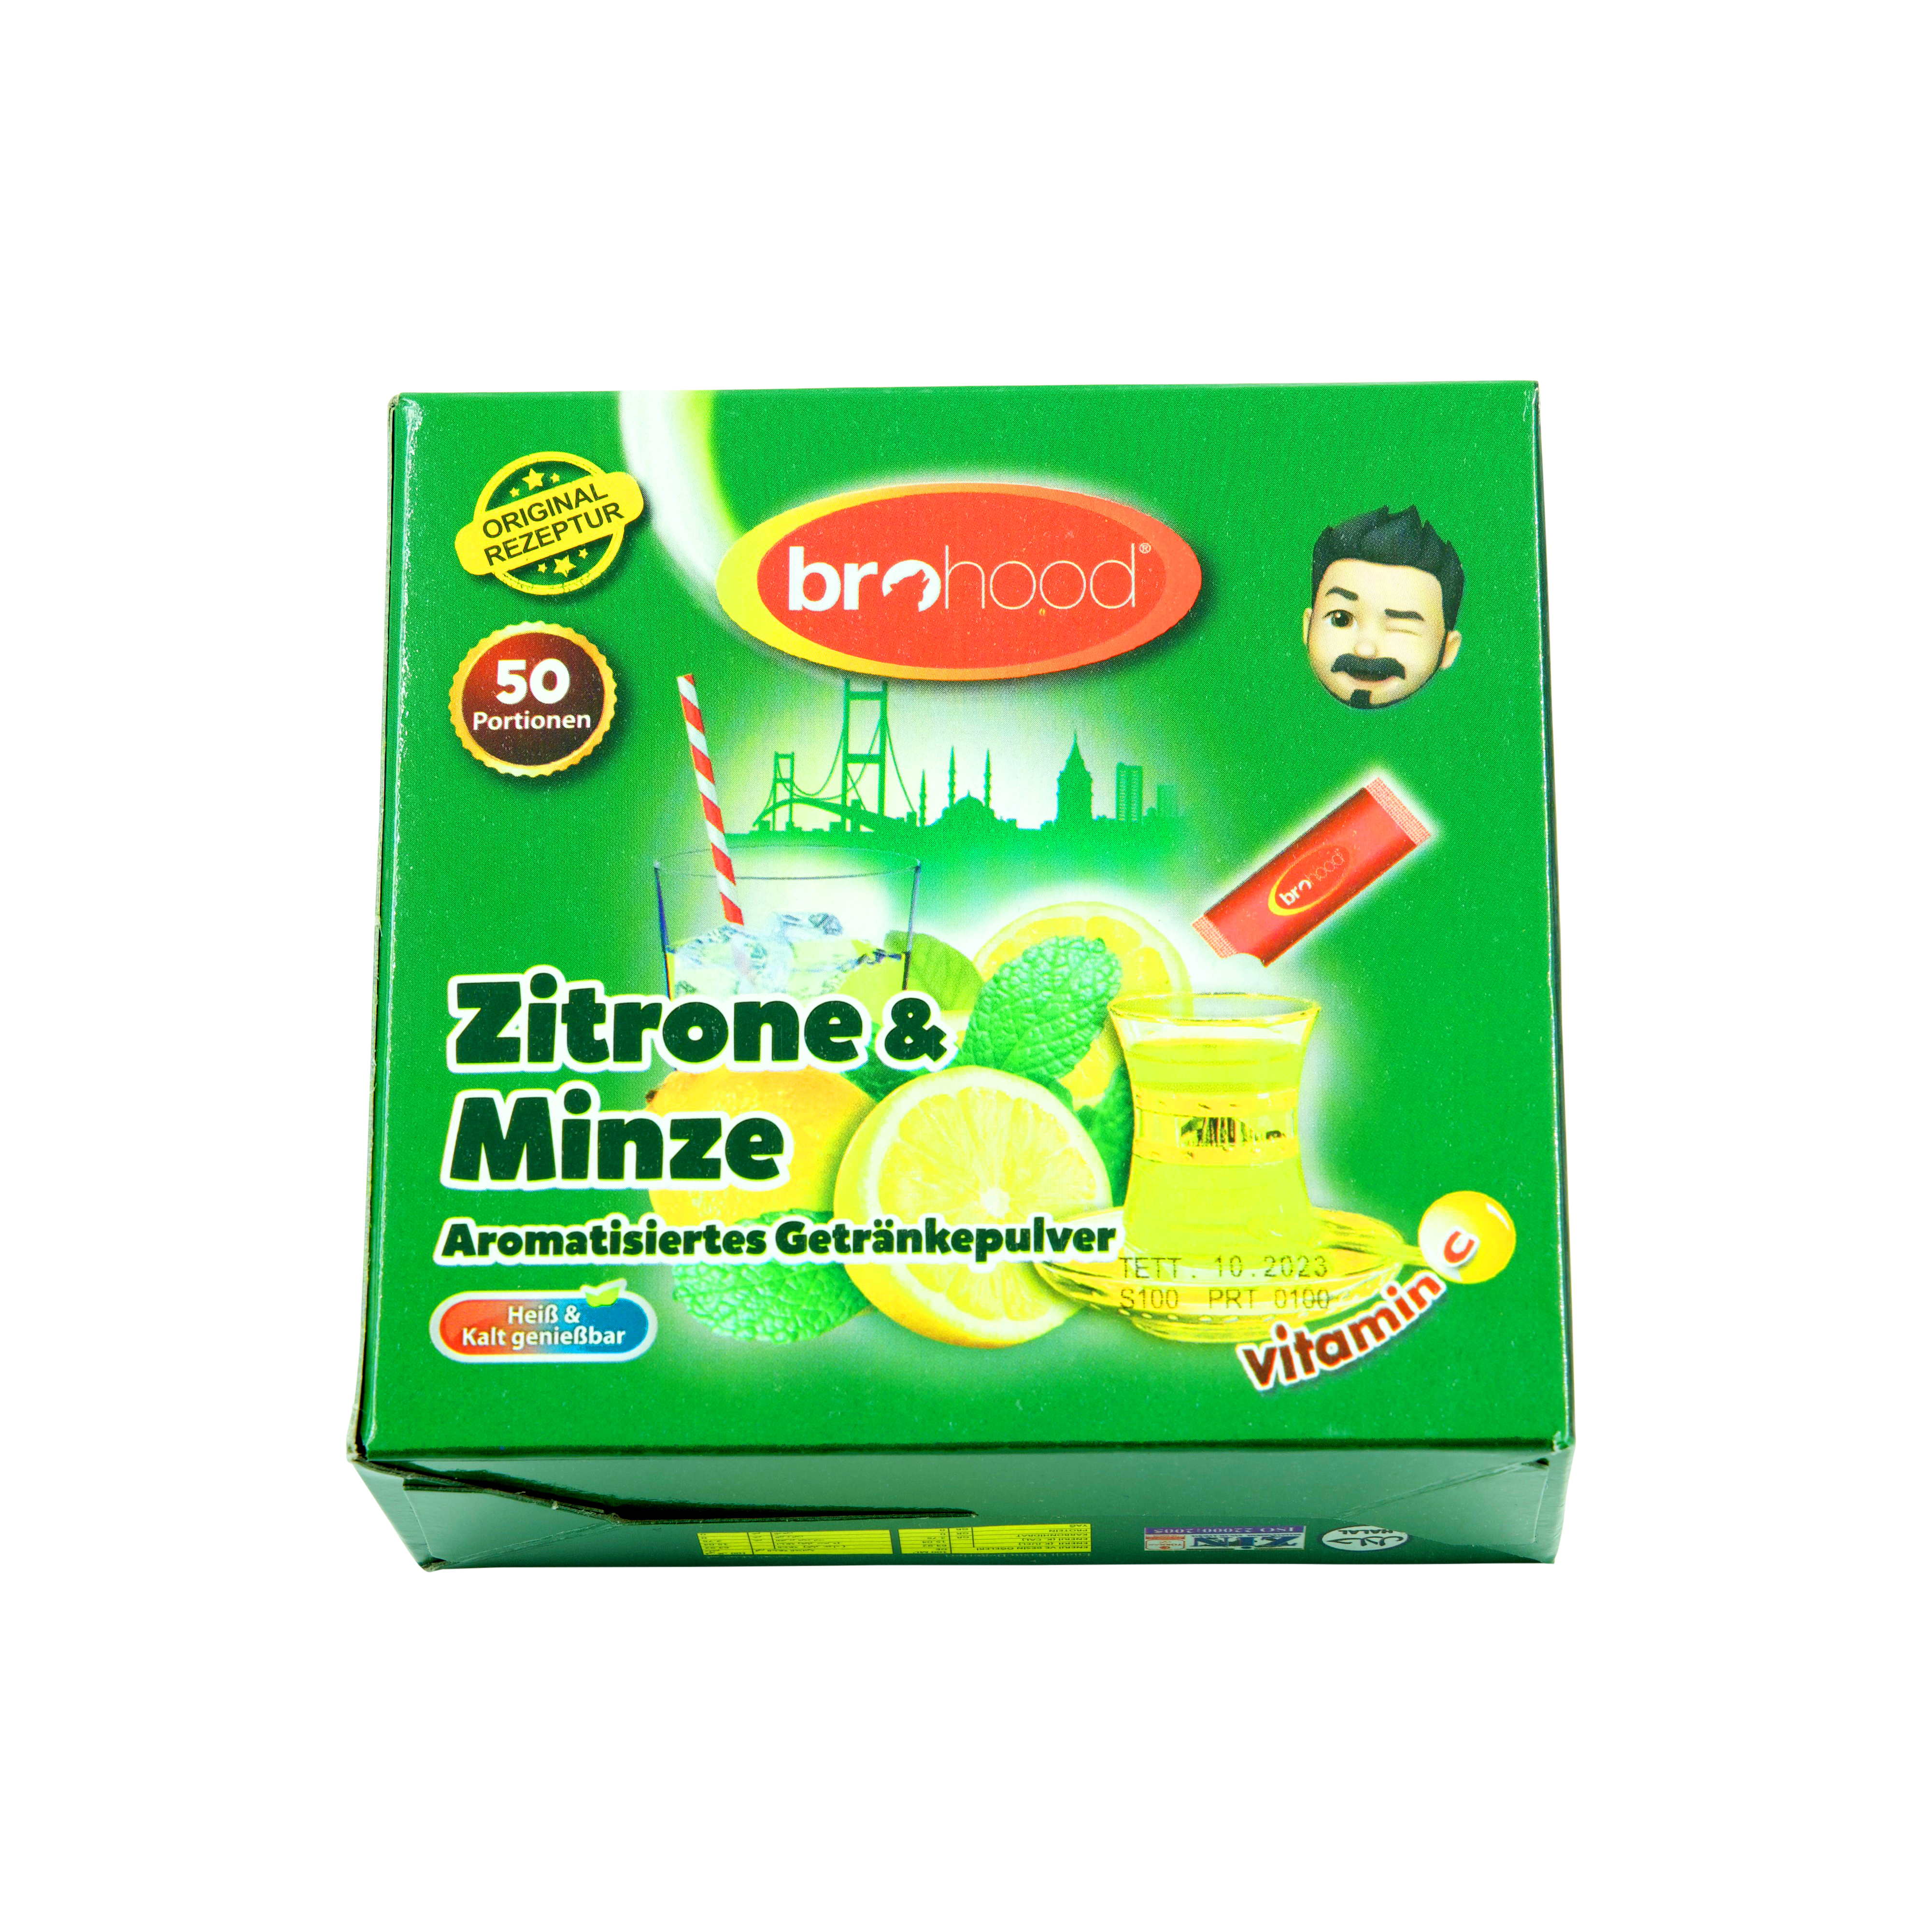 Zitrone Minze - aromatisiertes Getränkepulver